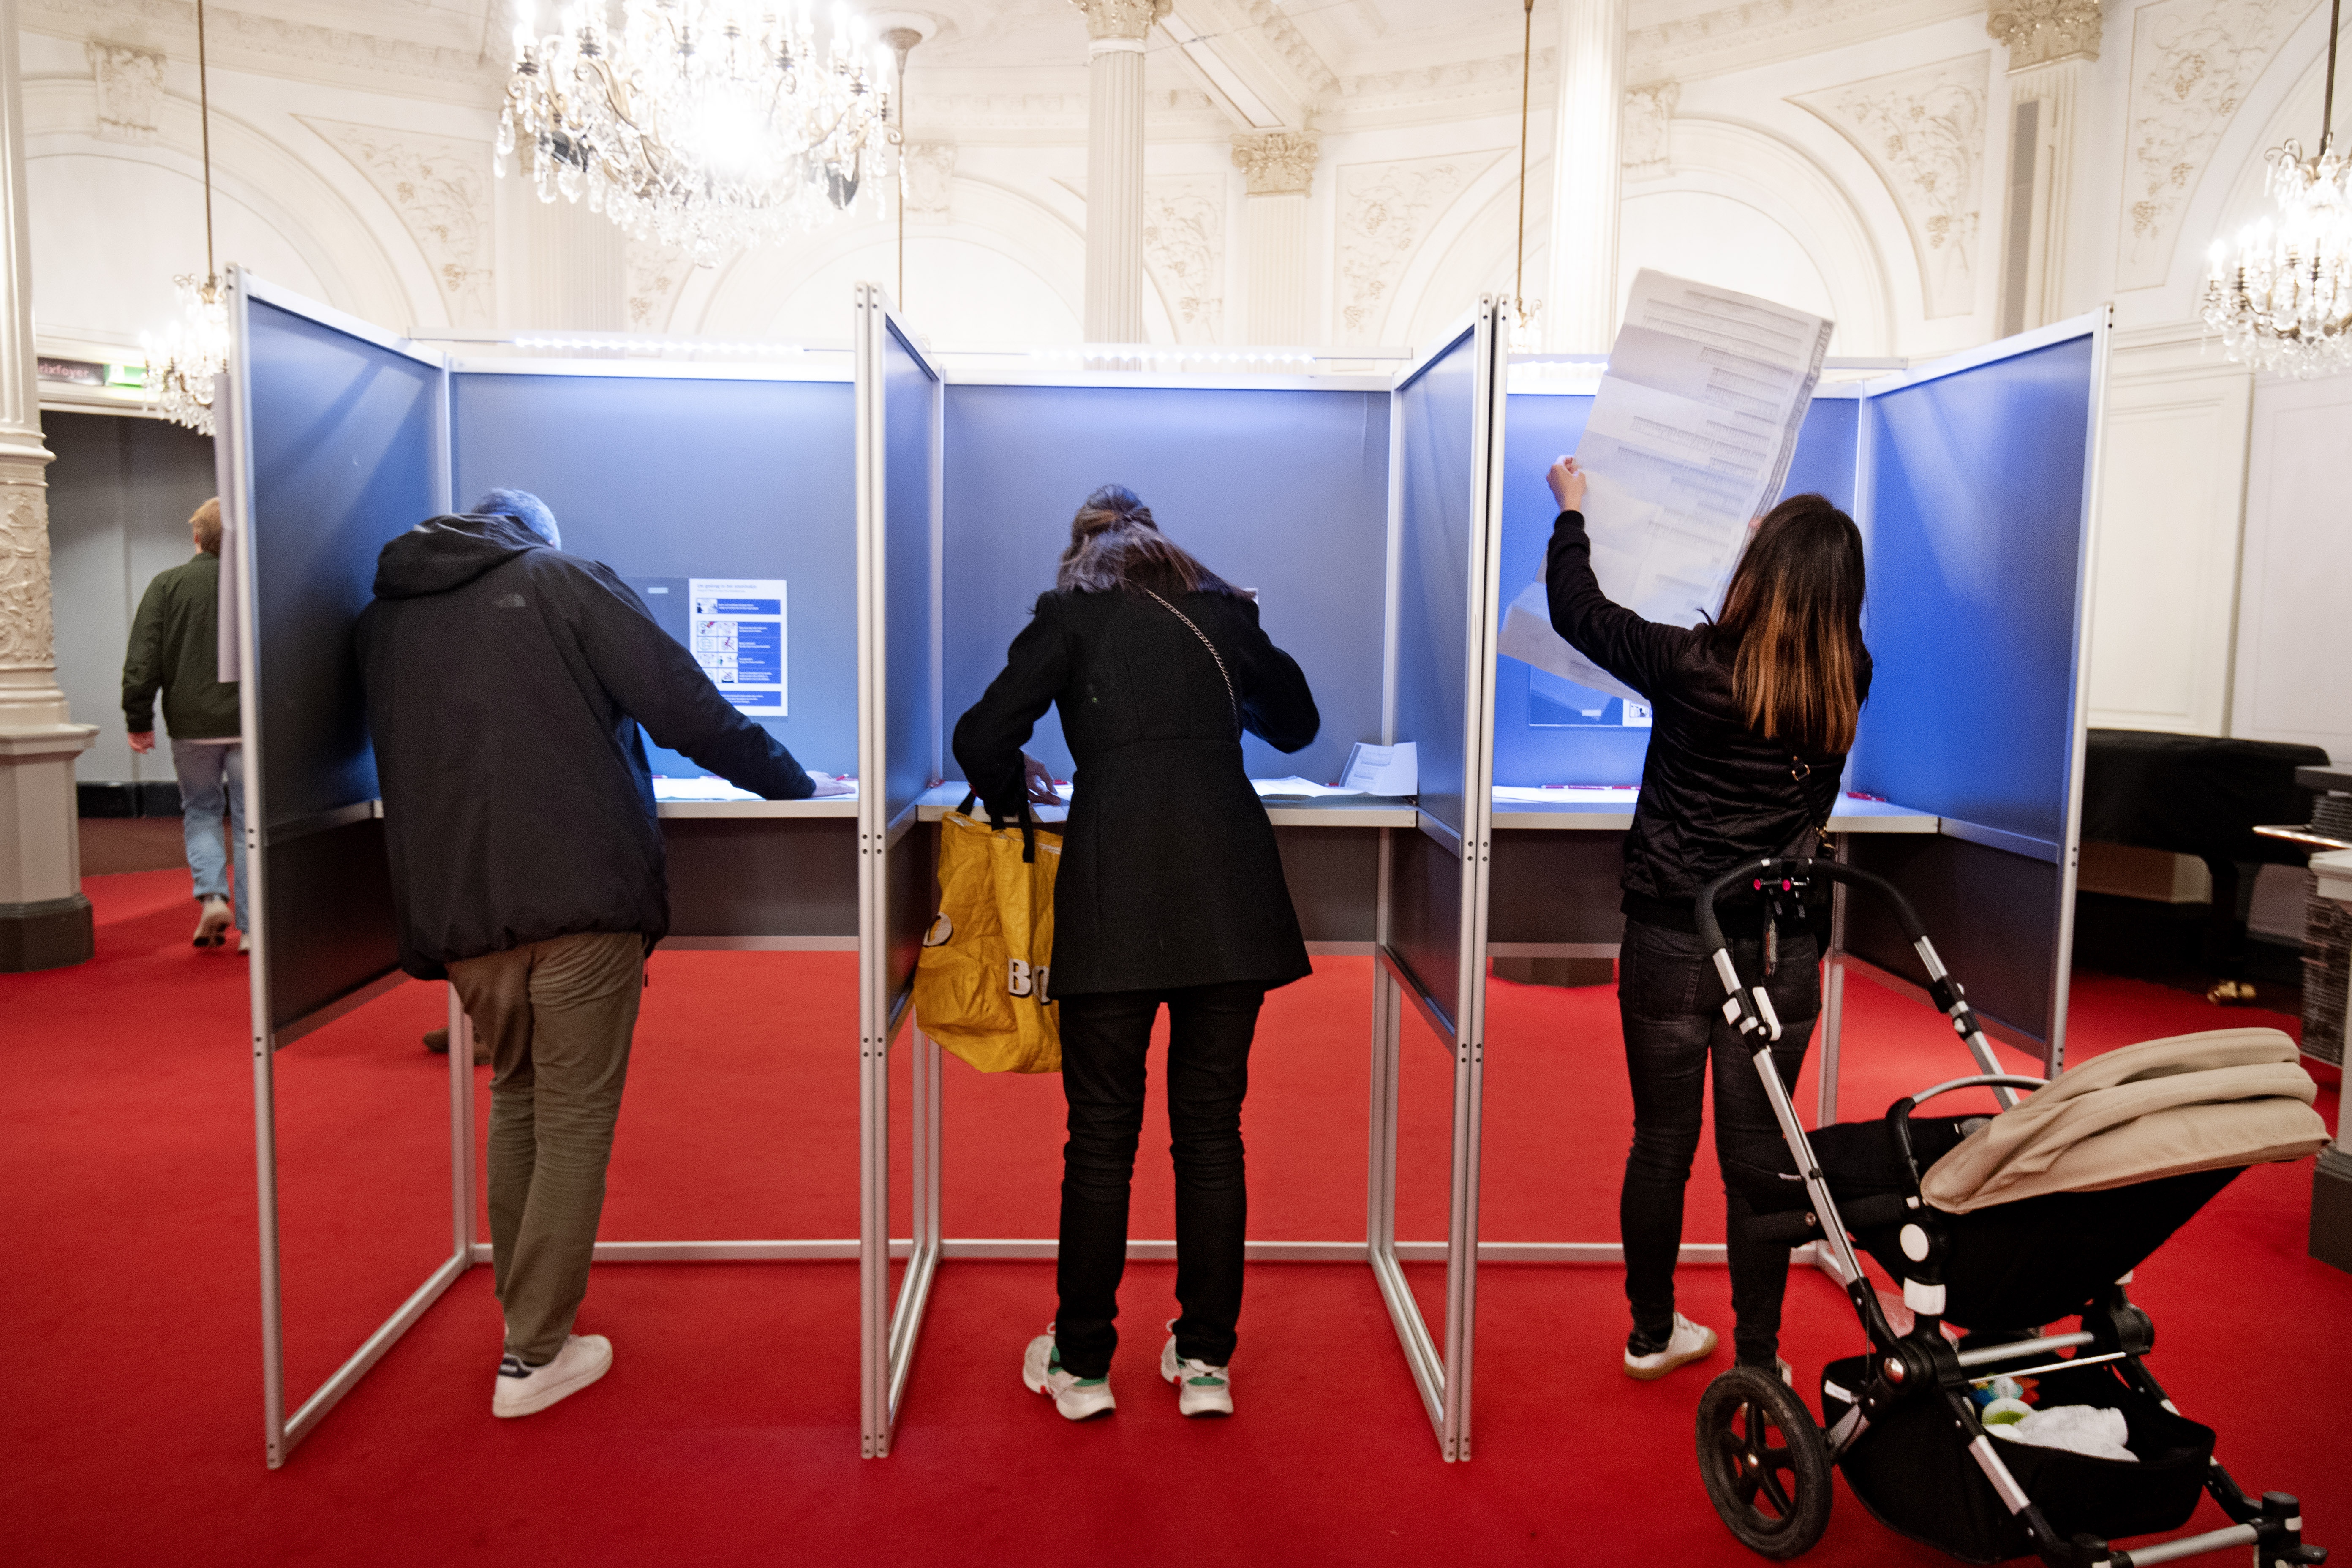 Verkiezingen stemmen bekende personen provinciale staten waterschappen stemwijzer stemhulp kamerverkiezingen stelling verkiezingen emoties kiezers emotie